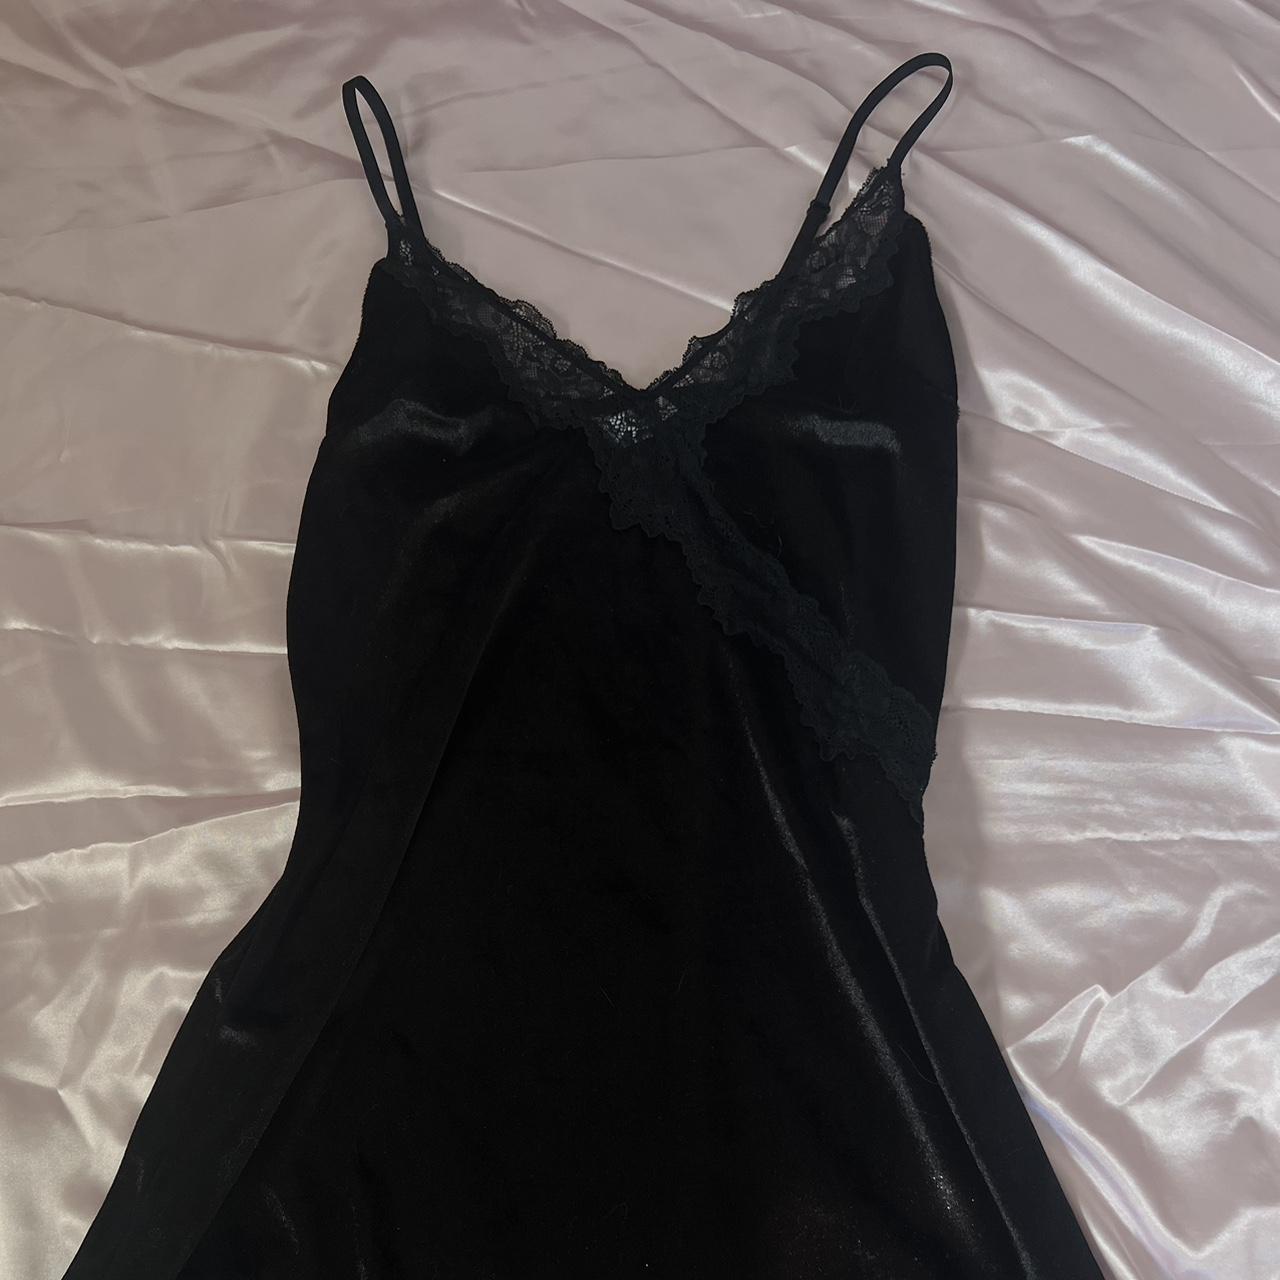 Black lace slip dress • Velvet material •... - Depop